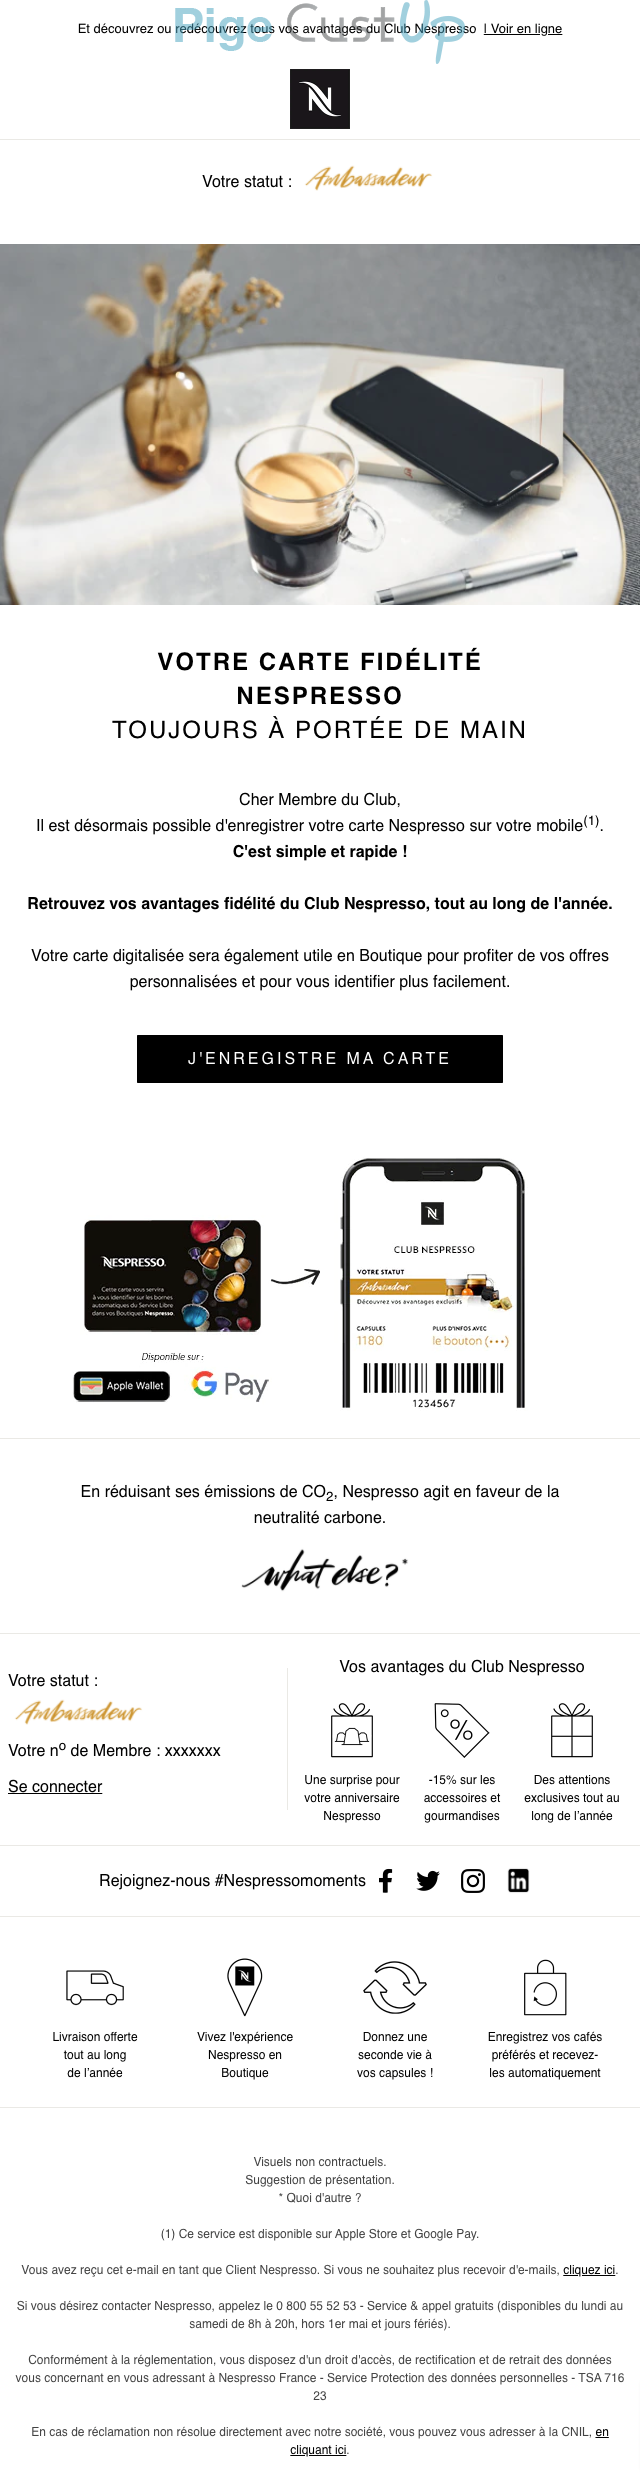 Exemple de Type de media  e-mailing - Nespresso - Marketing marque - Nouveau canal